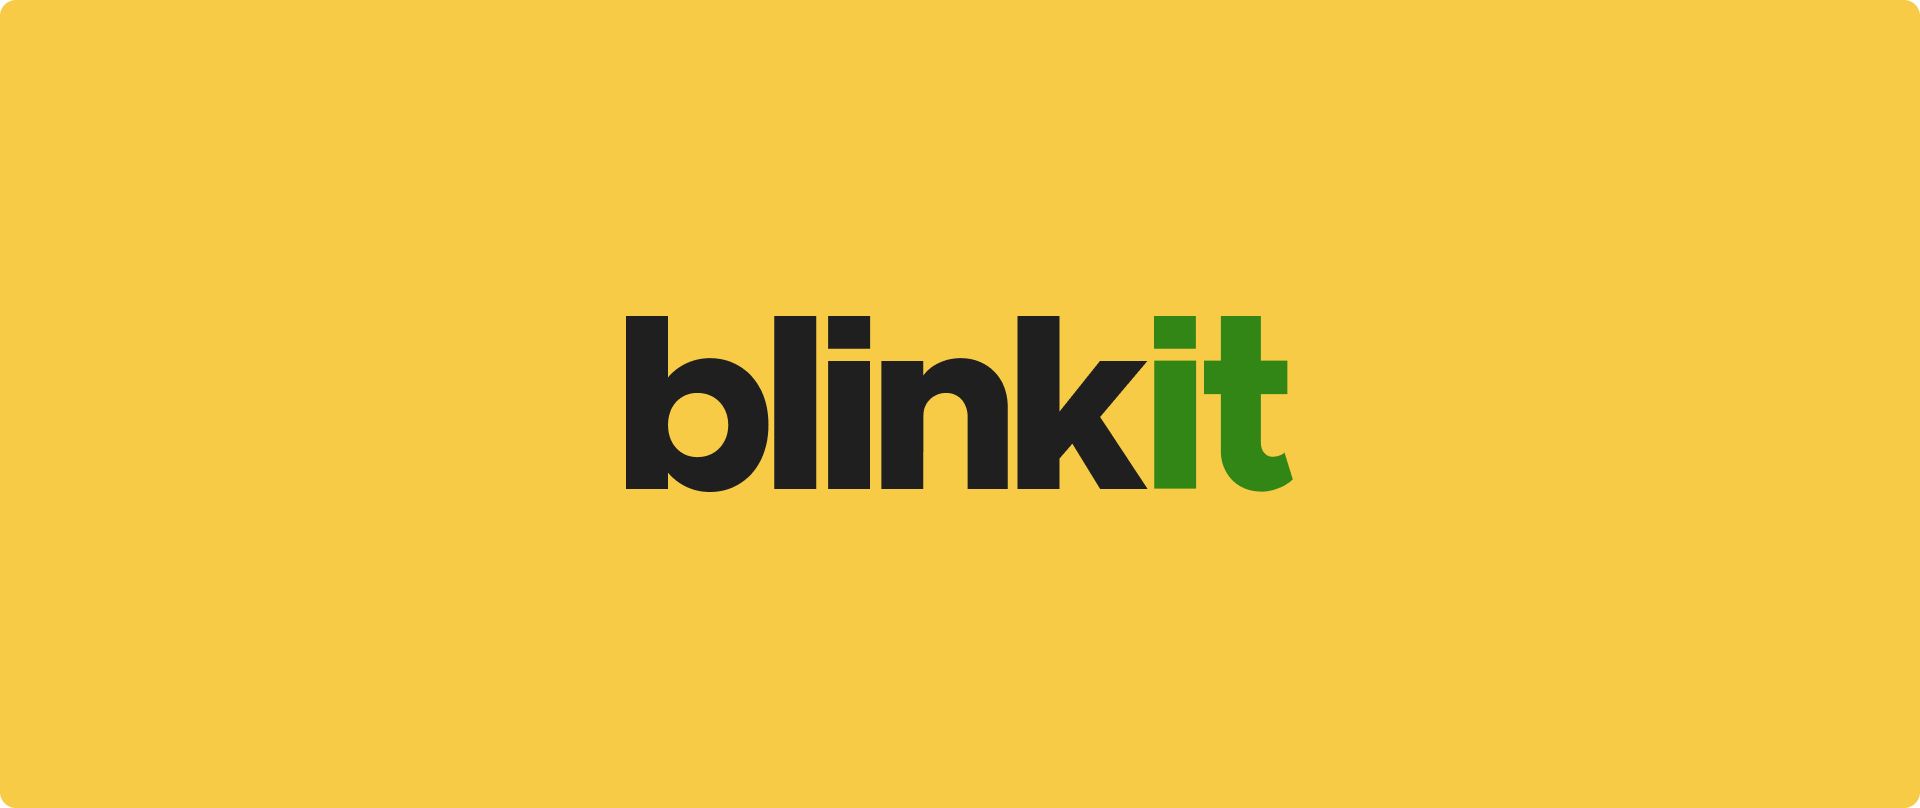 Blinkit çalışmıyor mu? Sorun giderme ipuçlarını keşfedin ve sorunsuz market alışverişi için en iyi Blinkit alternatiflerini bulun. Bugün yoluna devam et!